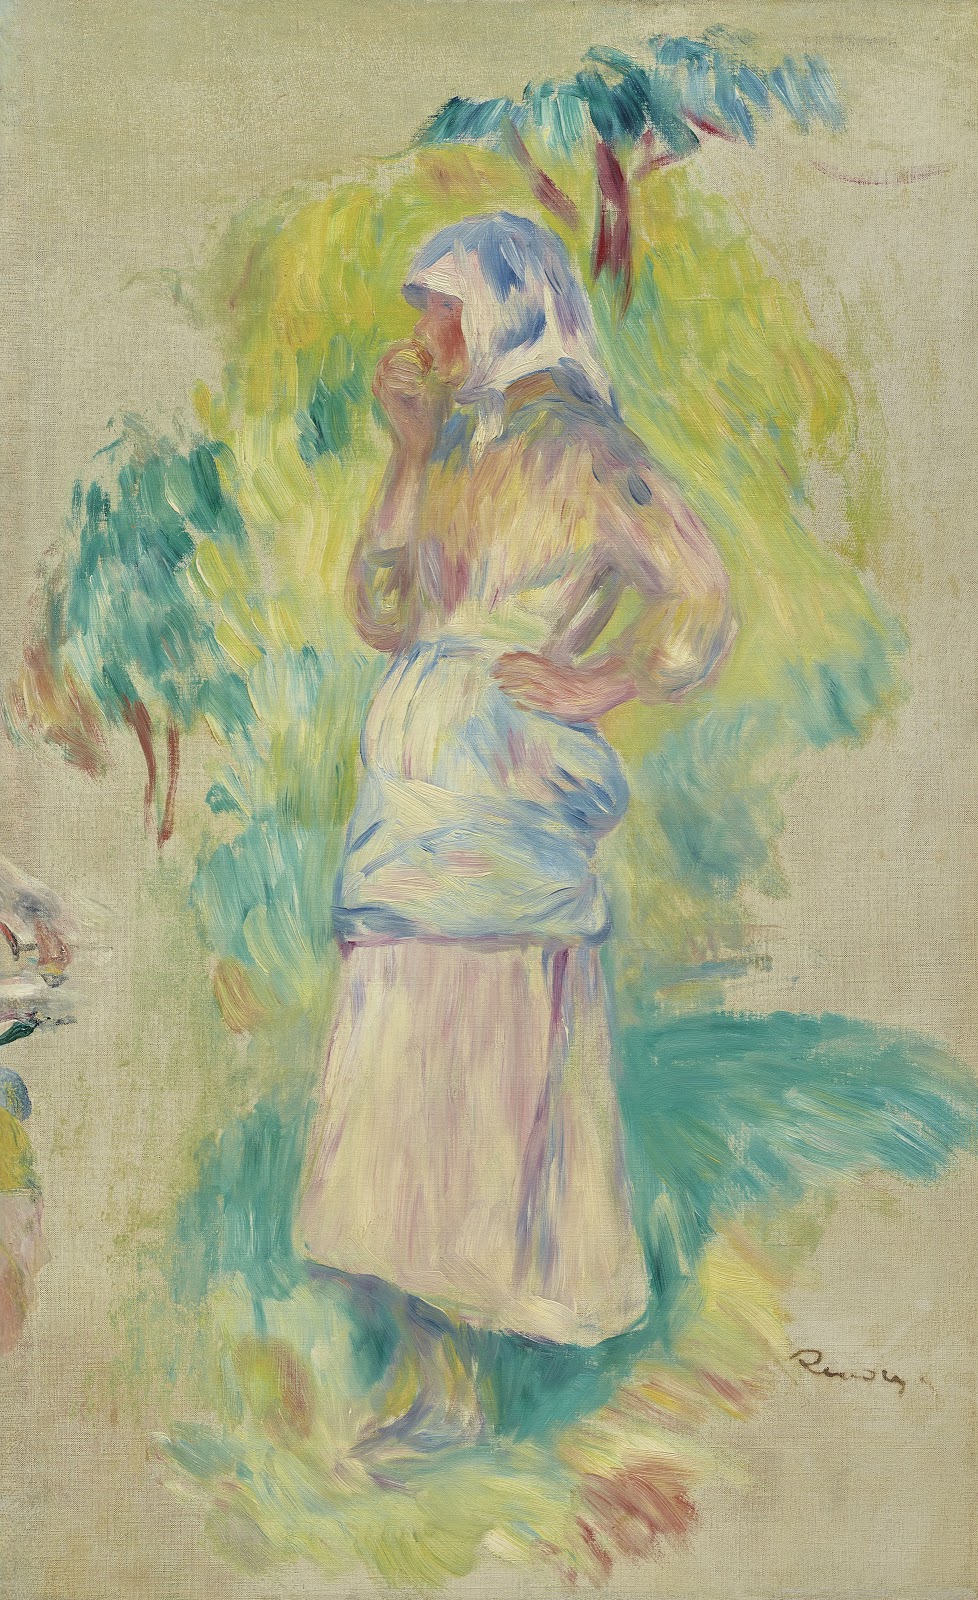 Pierre+Auguste+Renoir-1841-1-19 (786).jpg